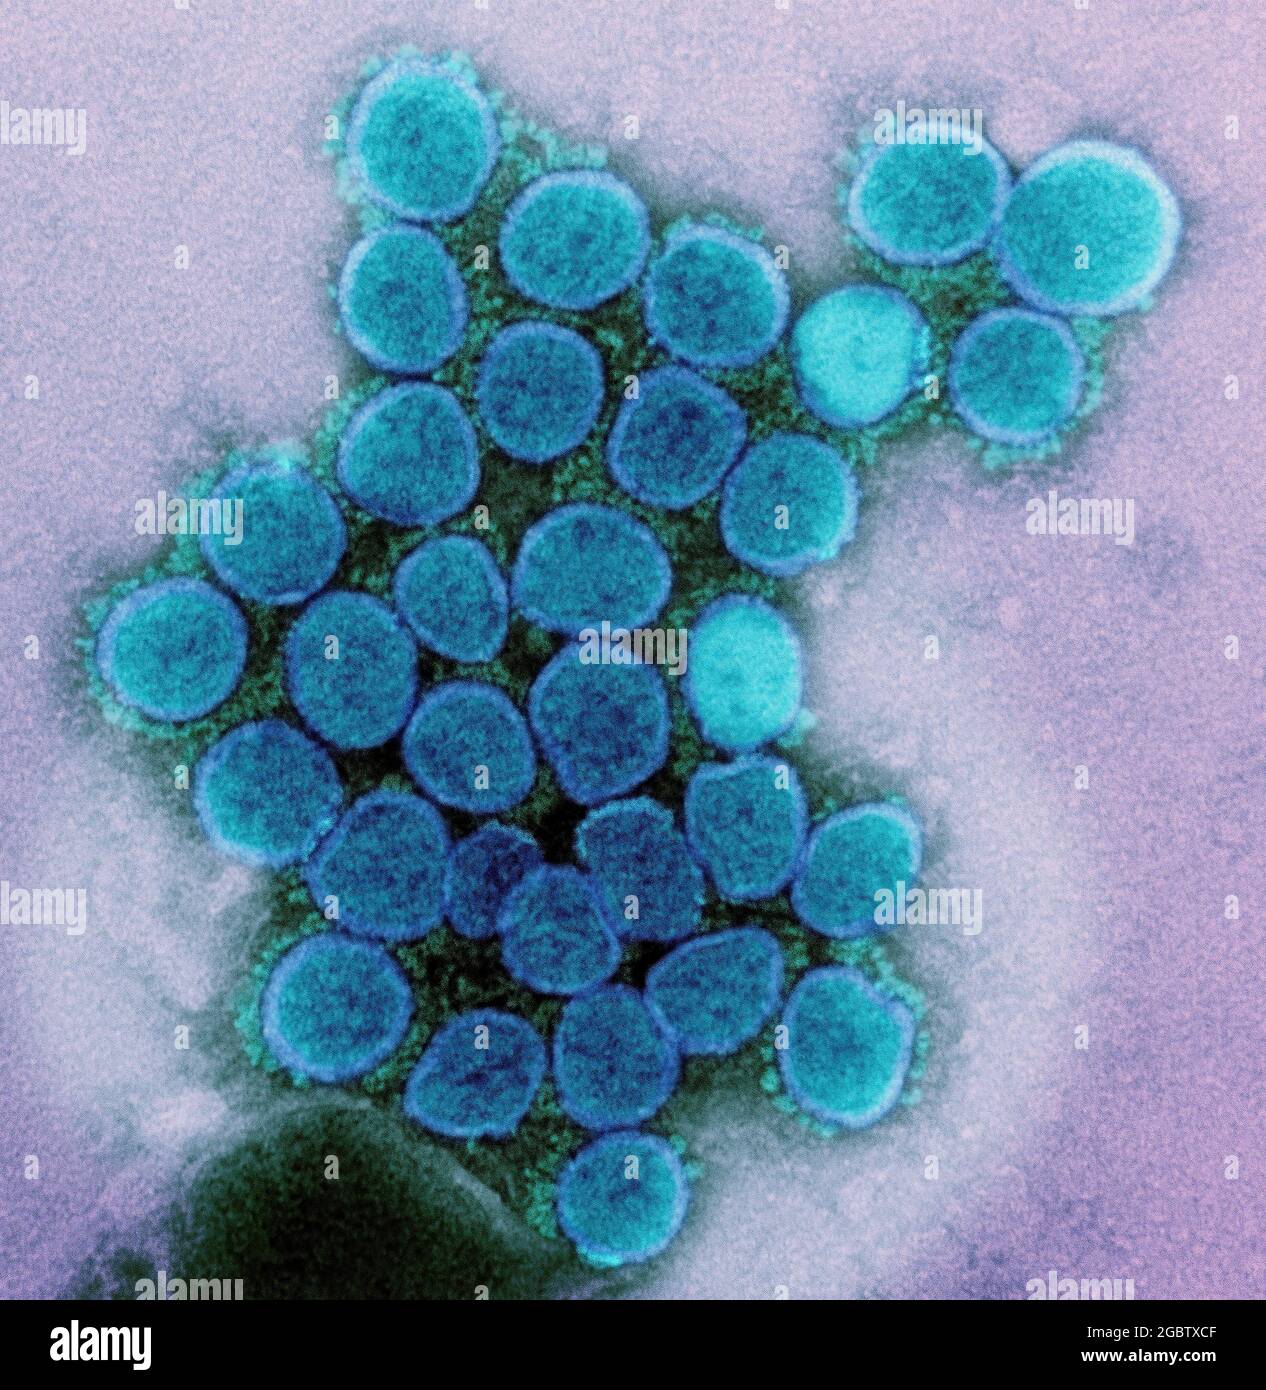 Micrografia elettronica di trasmissione di un ceppo variante di particelle di virus SARS-COV-2 (UK B.1.1.7), isolato da un campione di paziente e coltivato in coltura cellulare. Immagine catturata presso la NIAID Integrated Research Facility (IRF) di Fort Detrick, Maryland. Credito: NIAID Foto Stock